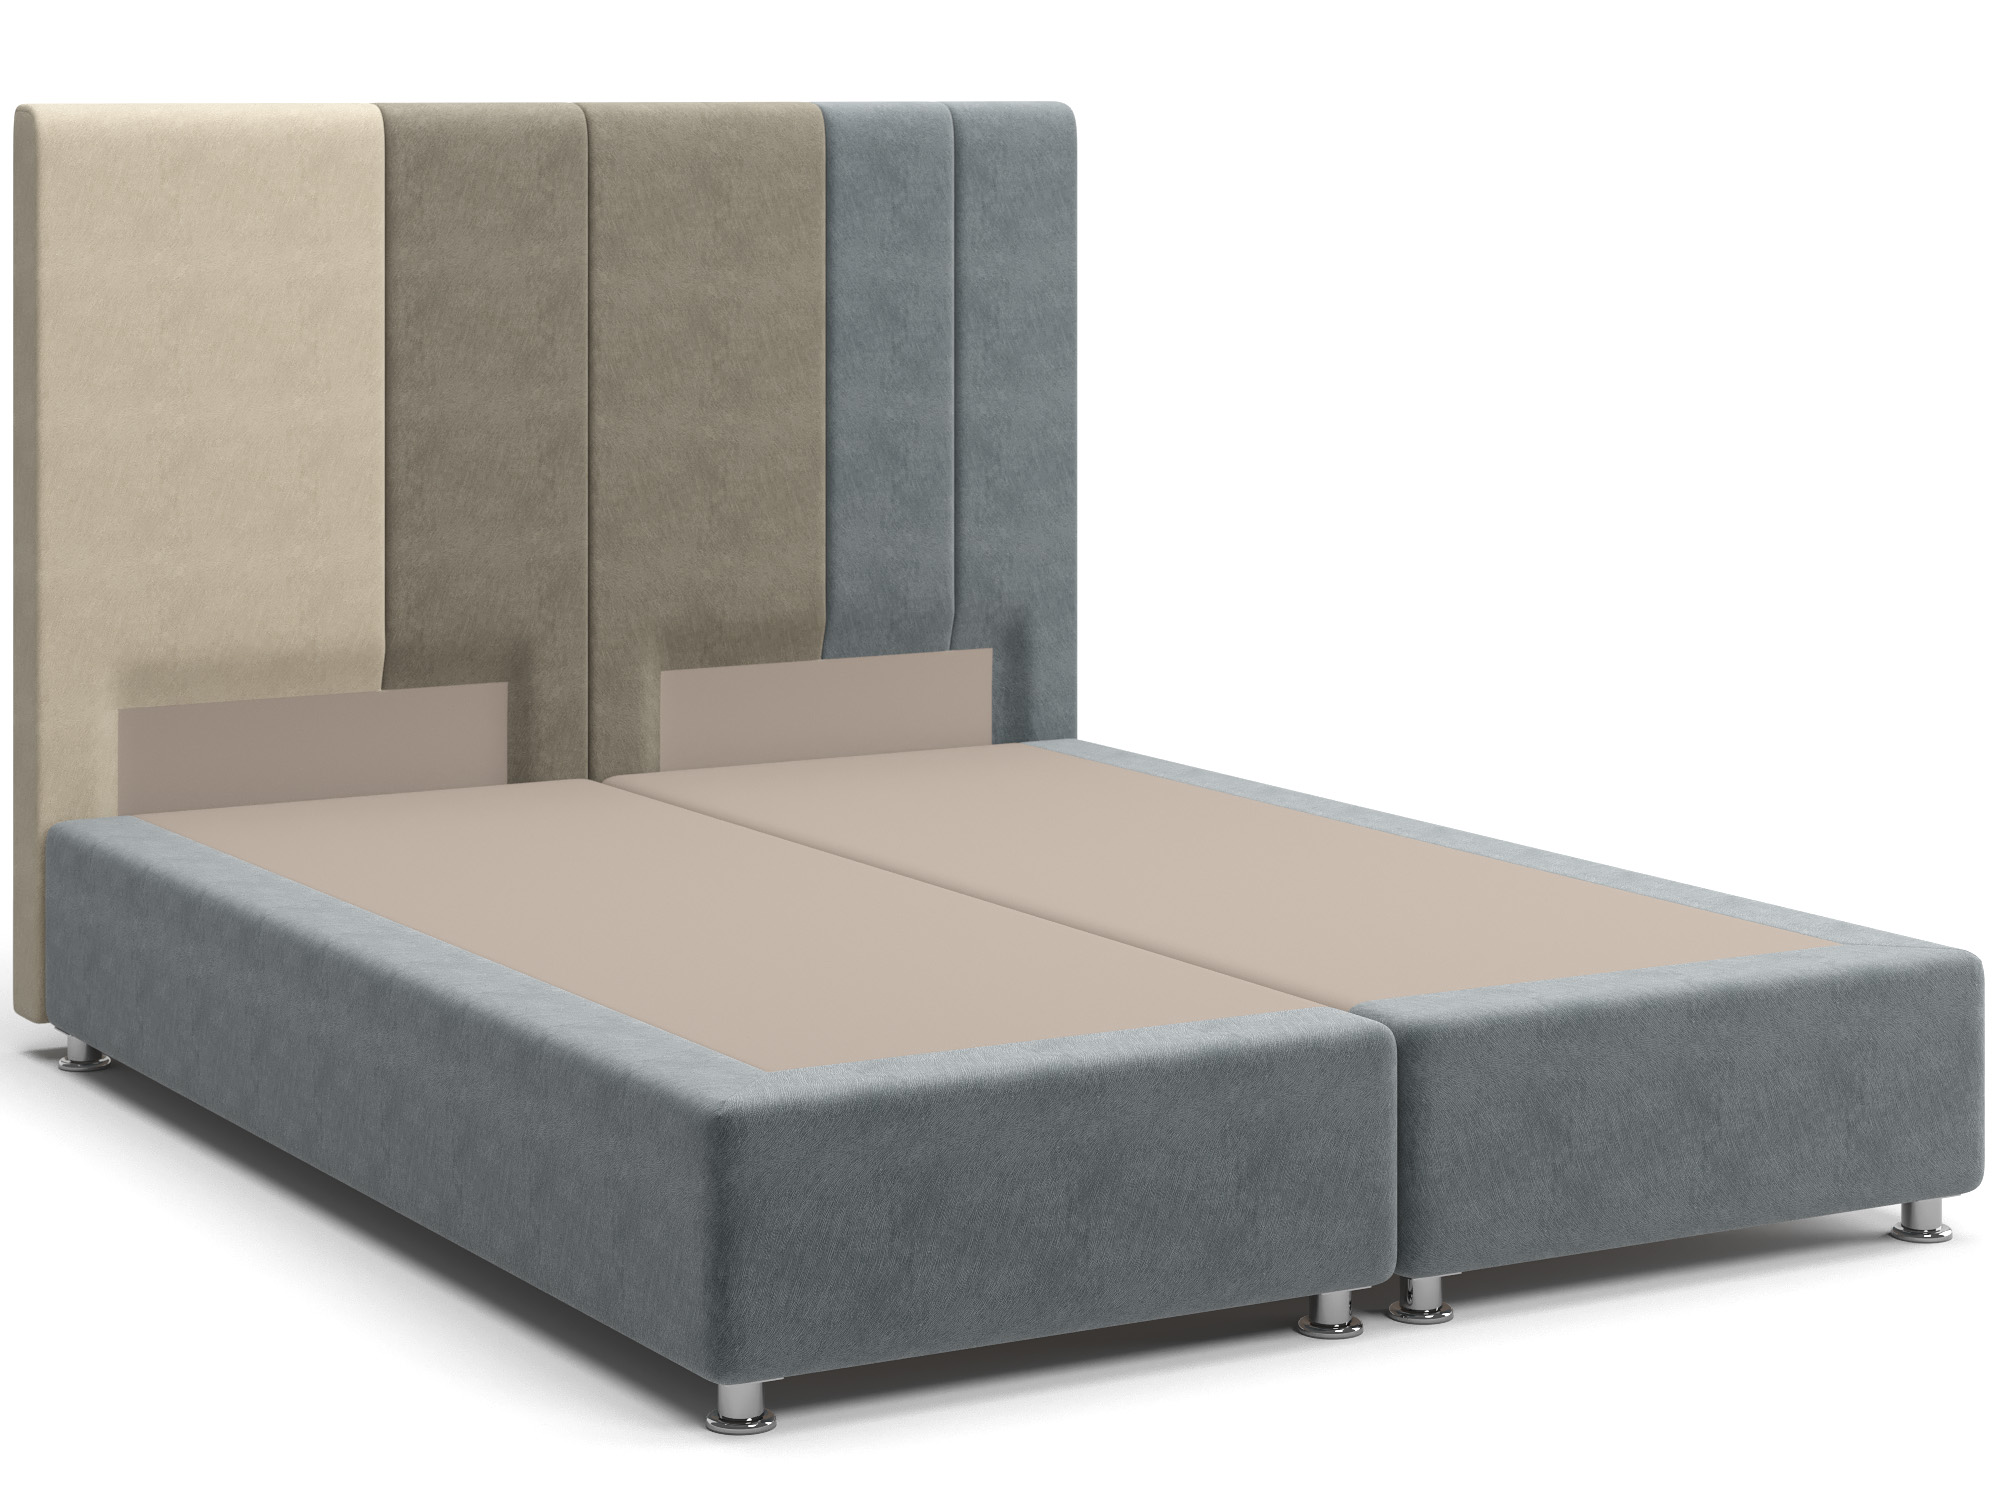 Интерьерная кровать Скала (160х200) Серый, Коричневый, Массив, ДСП интерьерная кровать марта 160х200 коричневый массив дсп